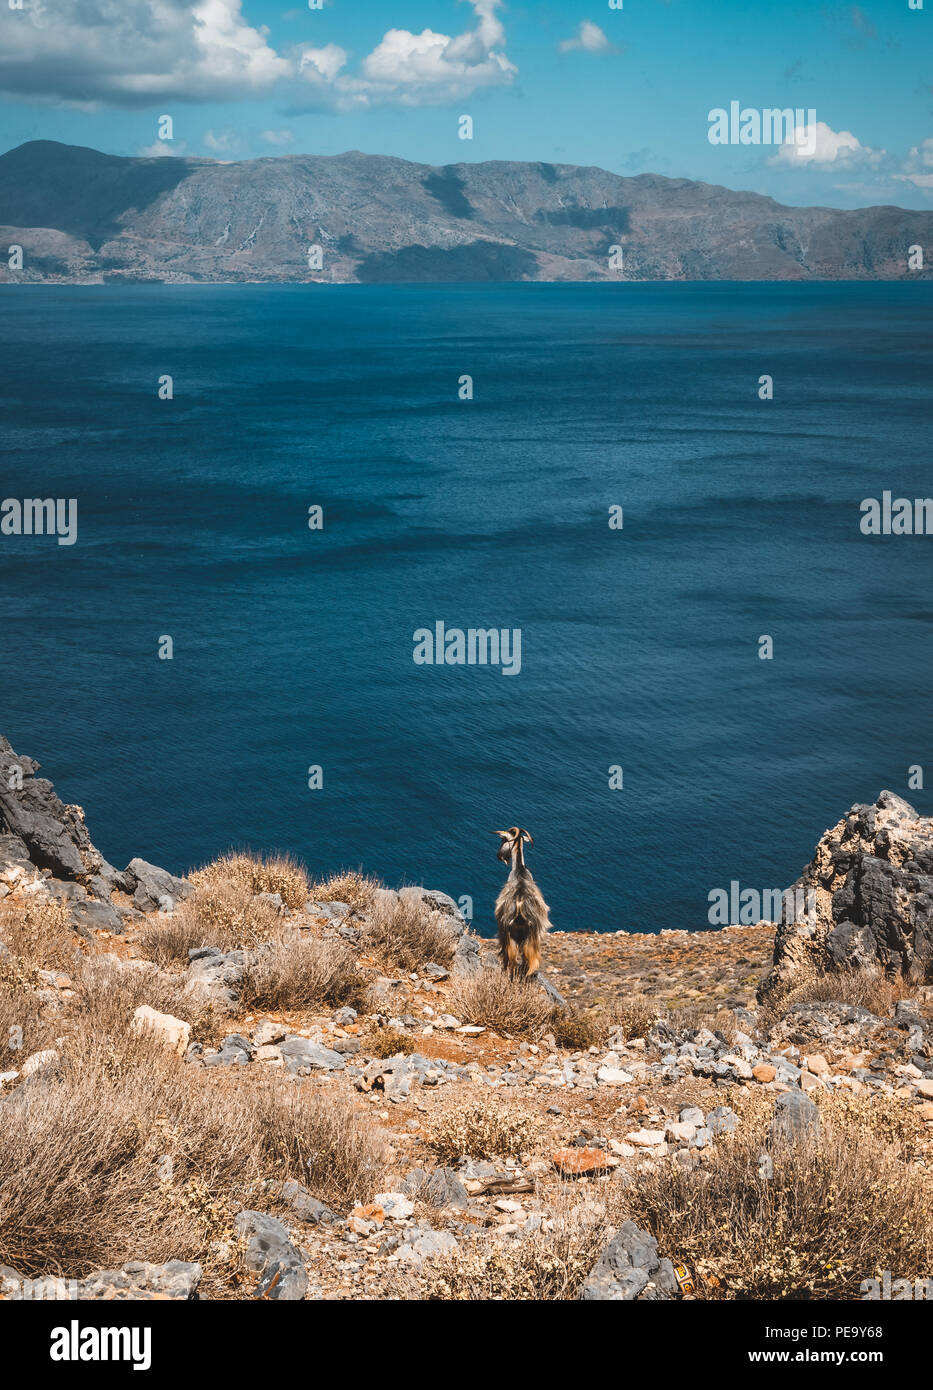 Neugierige Ziegen. Ziegen typisch für Mittelmeer Region mit Blick auf das Meer und die Insel im Hintergrund. Bild auf der griechischen Insel Kreta, bekannt für seine cl Stockfoto